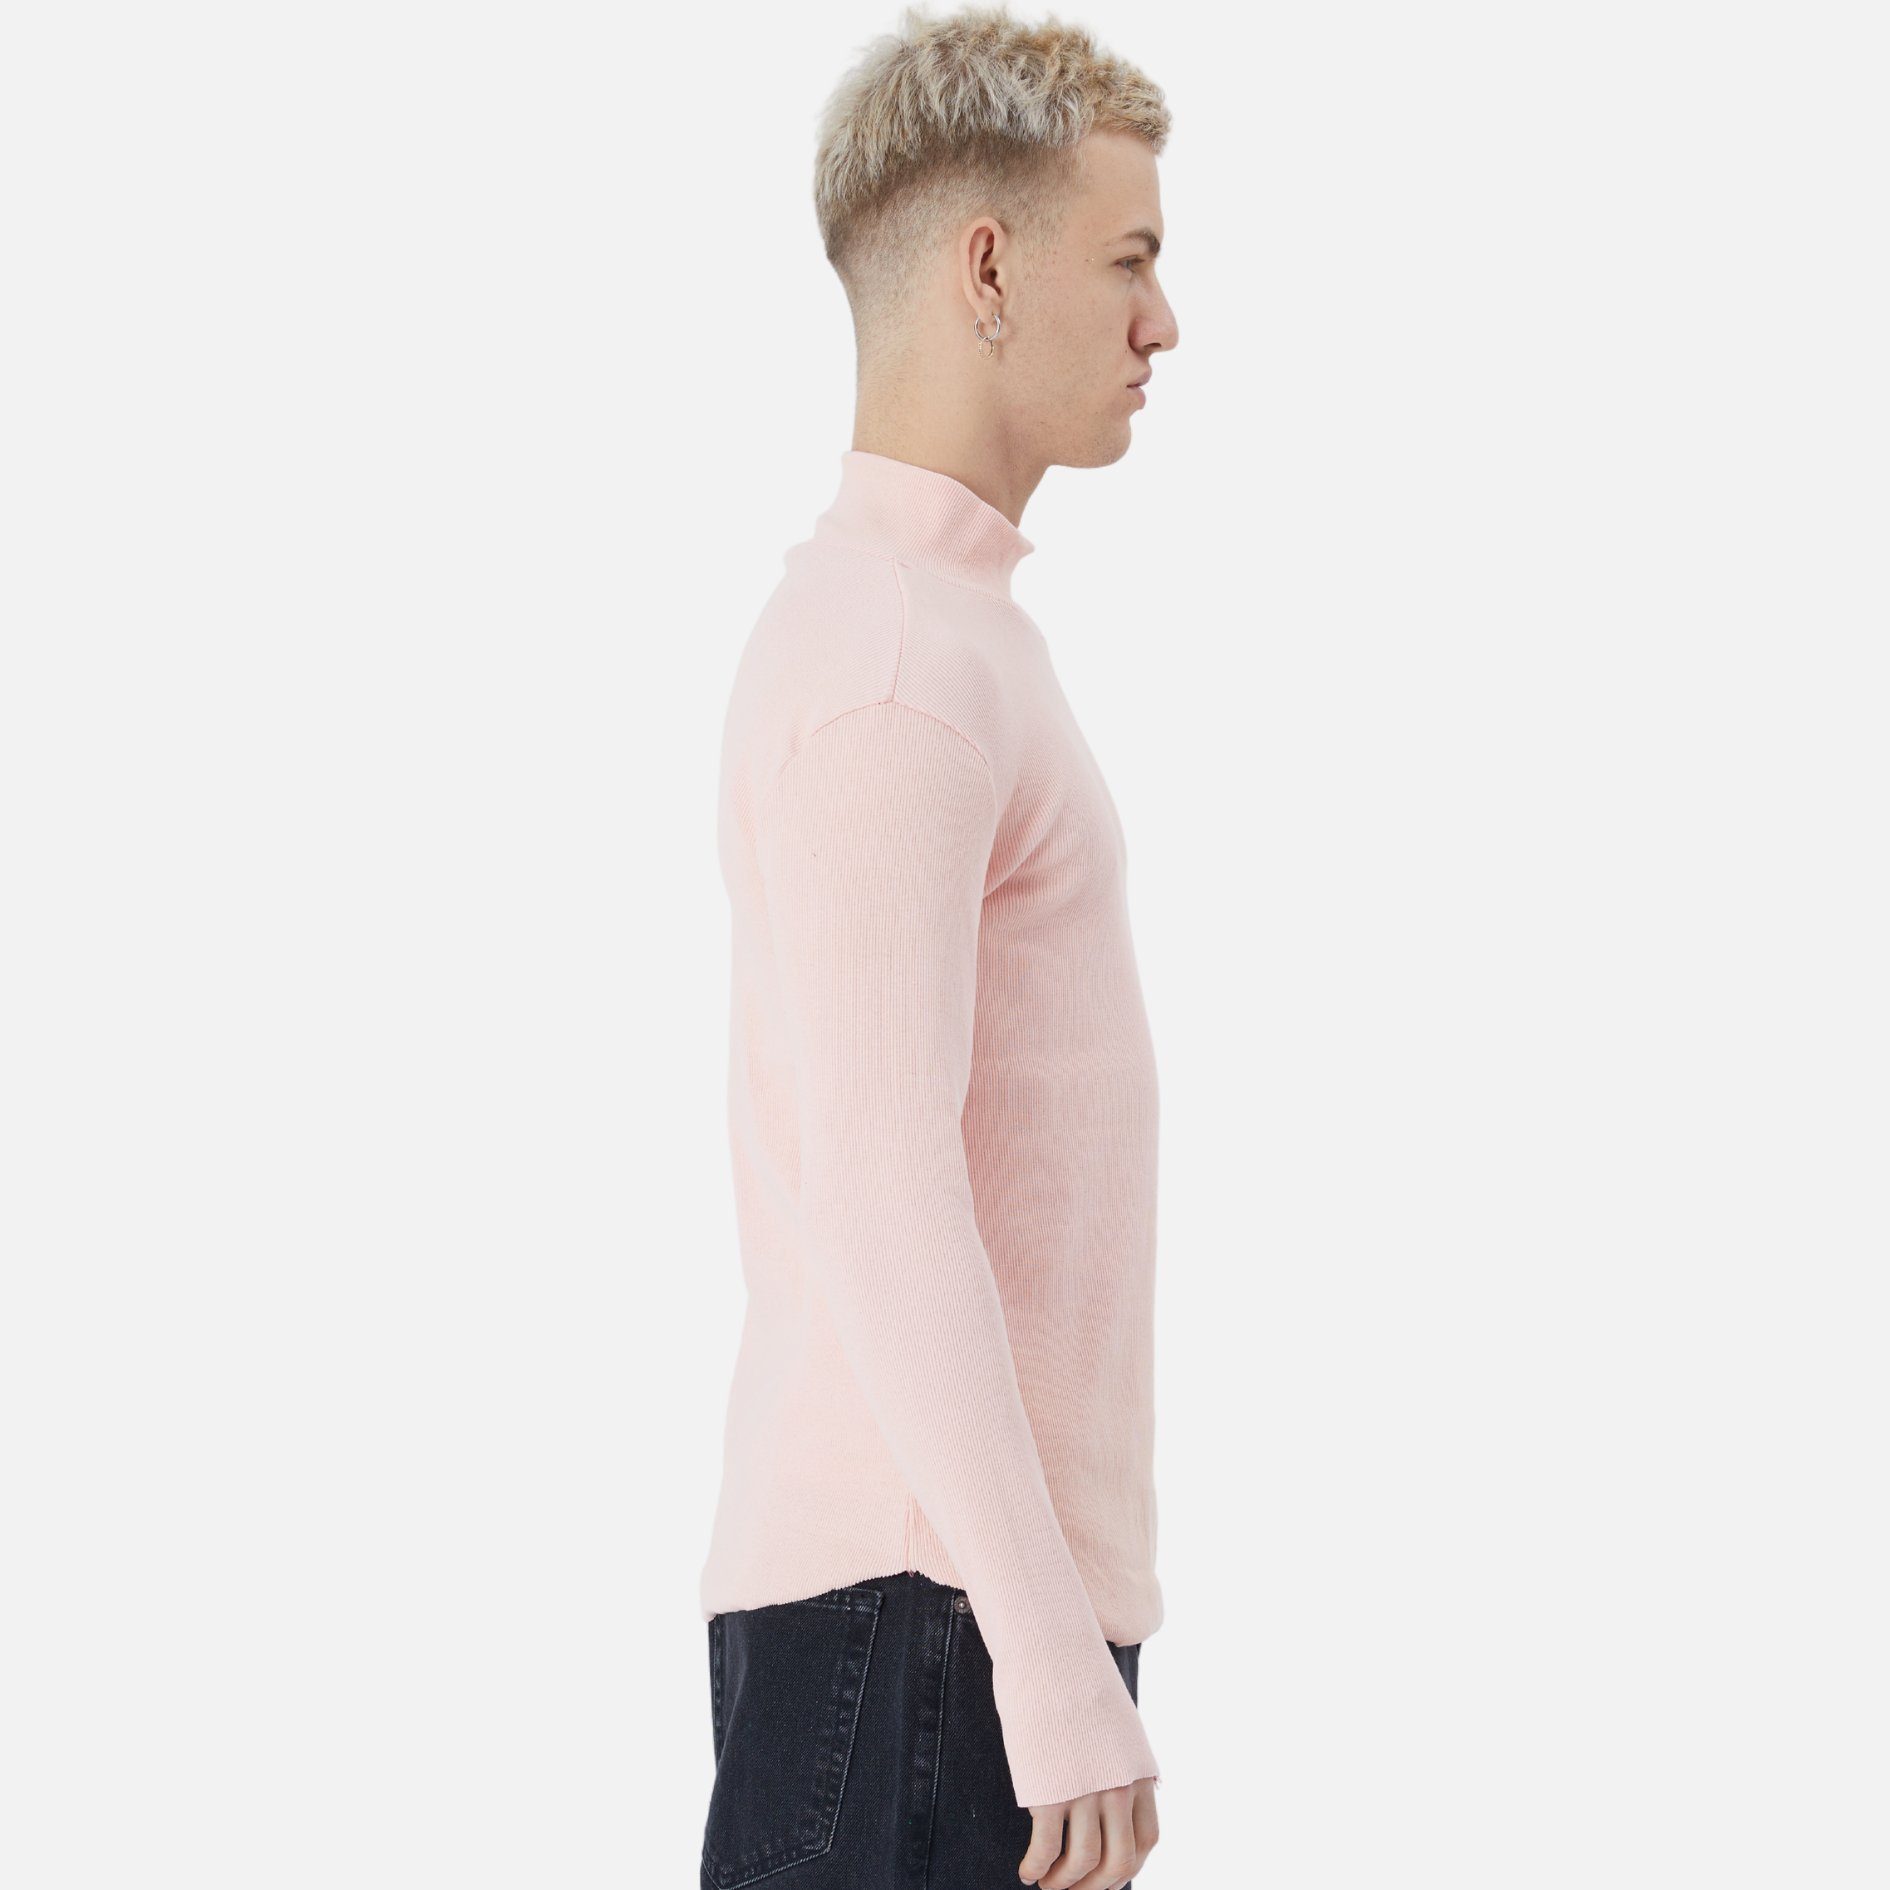 Regular Rundhals Casuals Rosa Pullover Fit Herren COFI Sweatshirt Sweatshirt